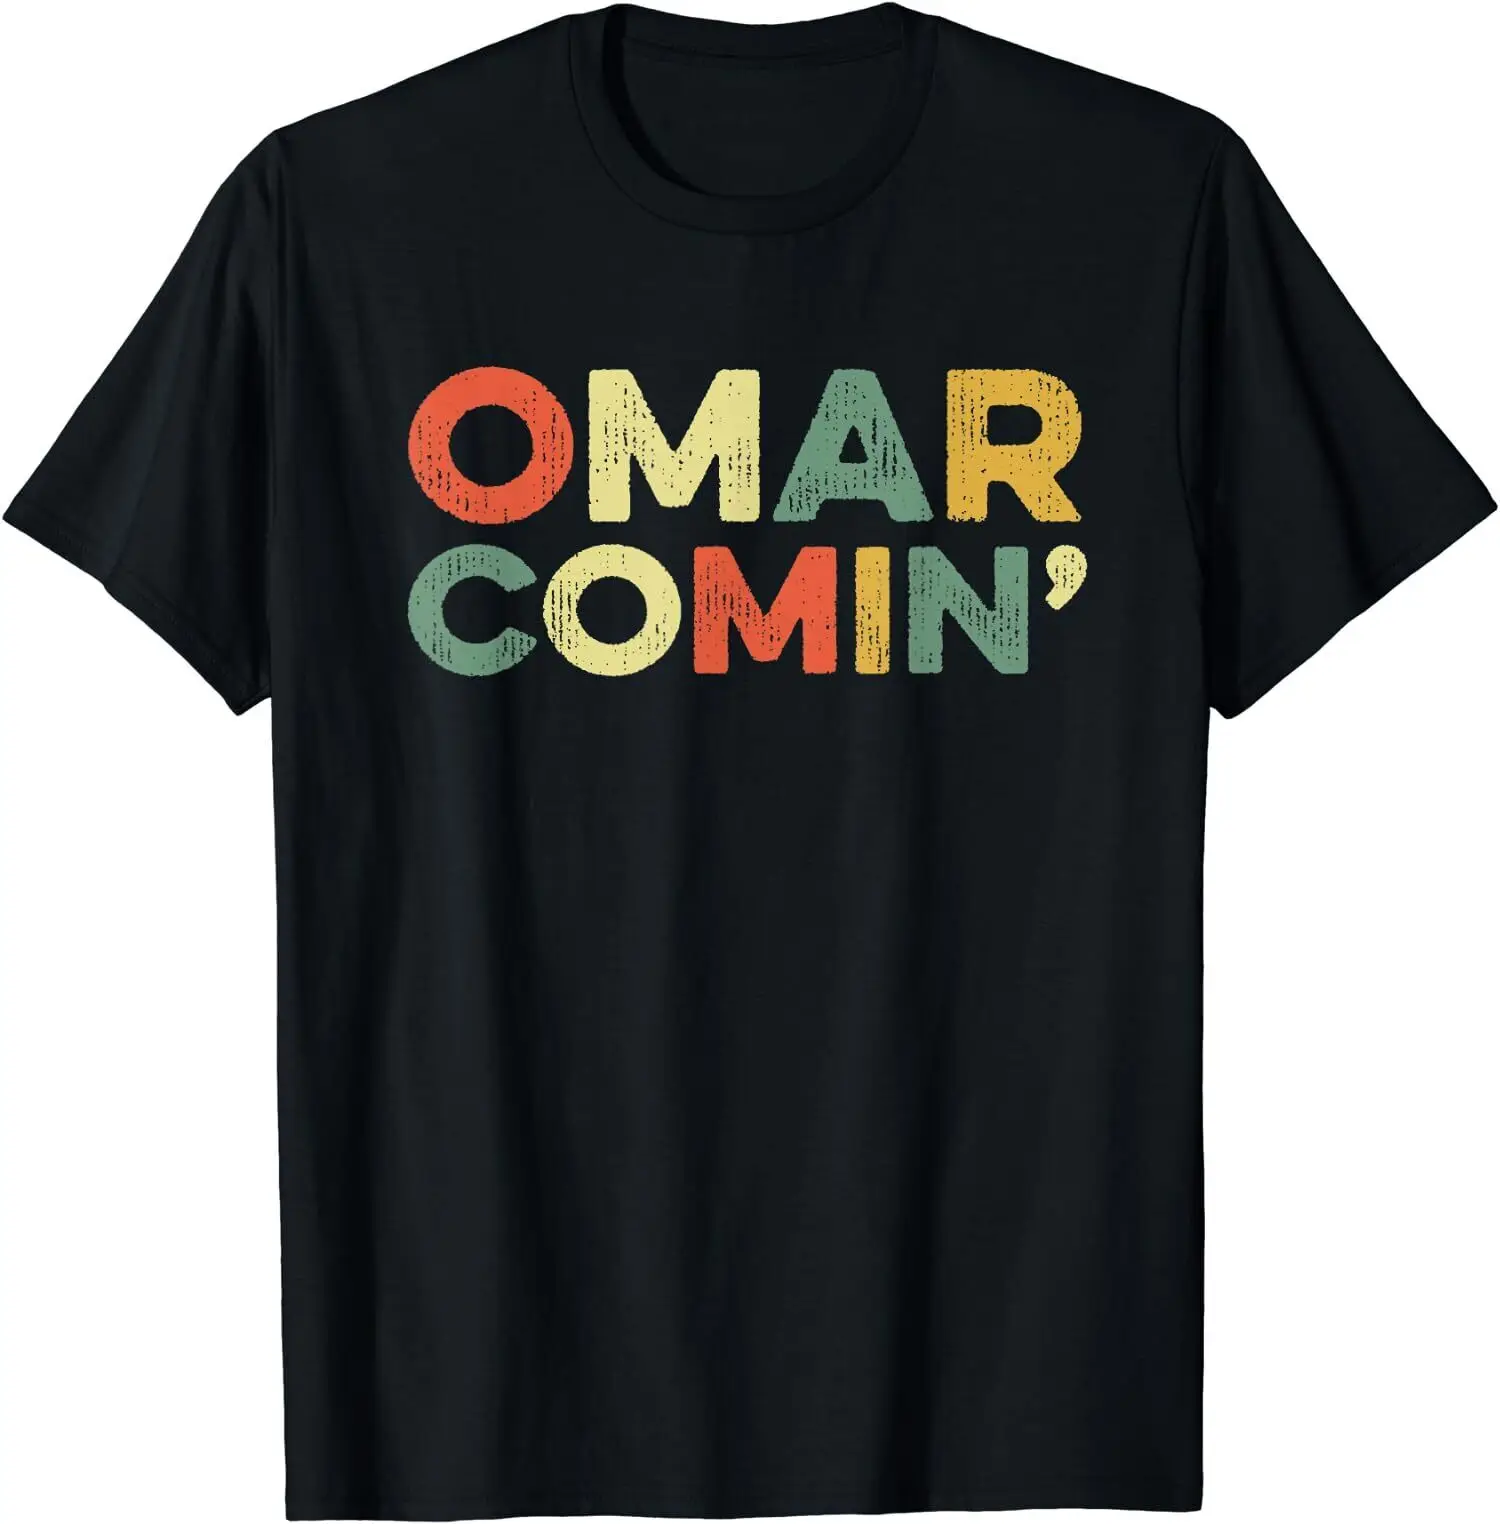 НОВАЯ лимитированная футболка Omar Comin Wire с забавным мемом, популярная сленговая футболка